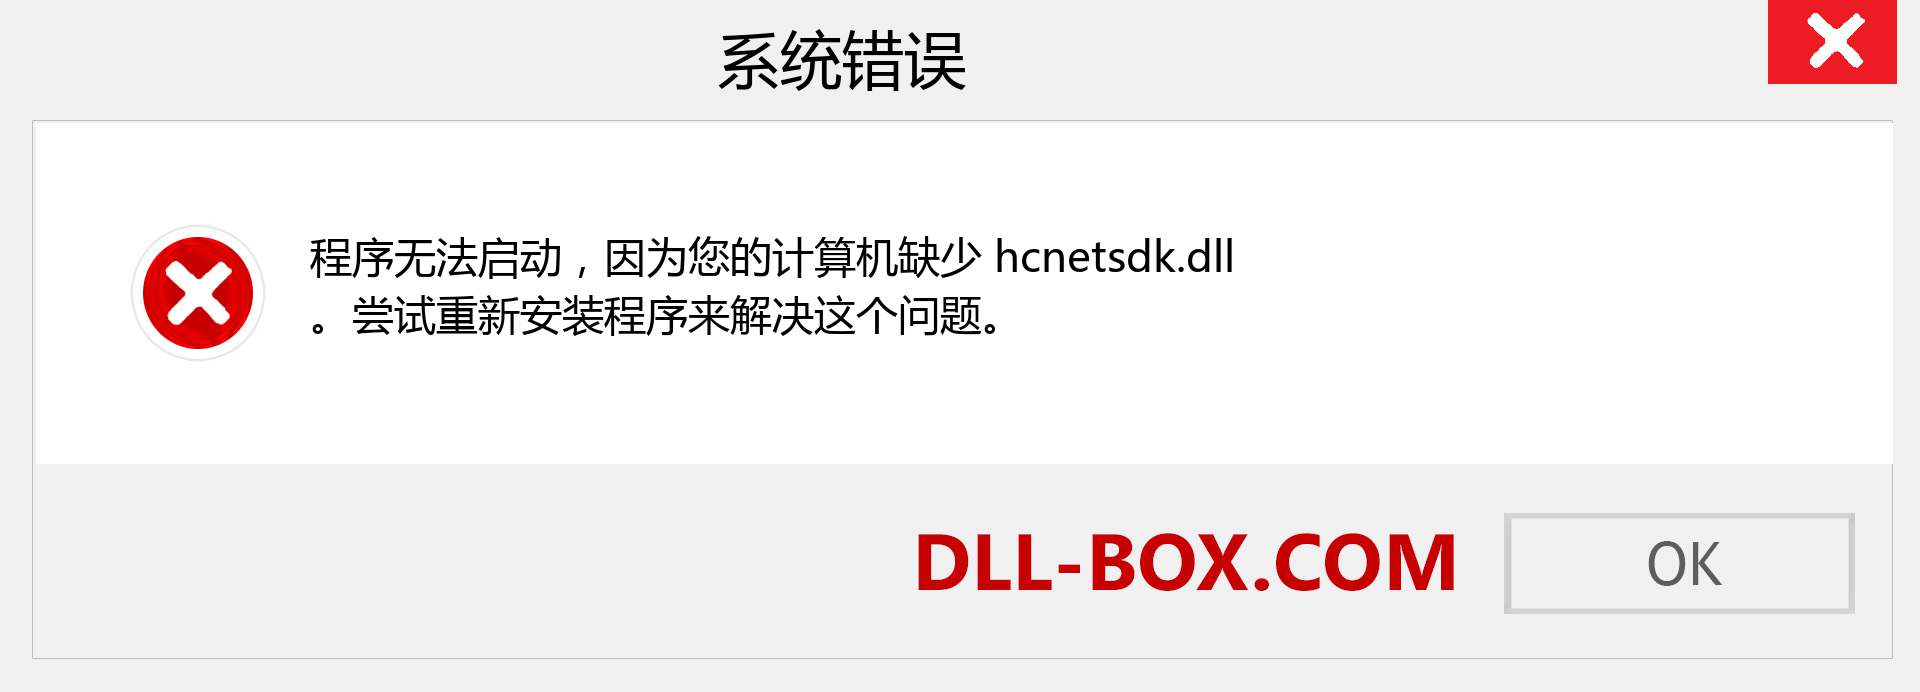 hcnetsdk.dll 文件丢失？。 适用于 Windows 7、8、10 的下载 - 修复 Windows、照片、图像上的 hcnetsdk dll 丢失错误